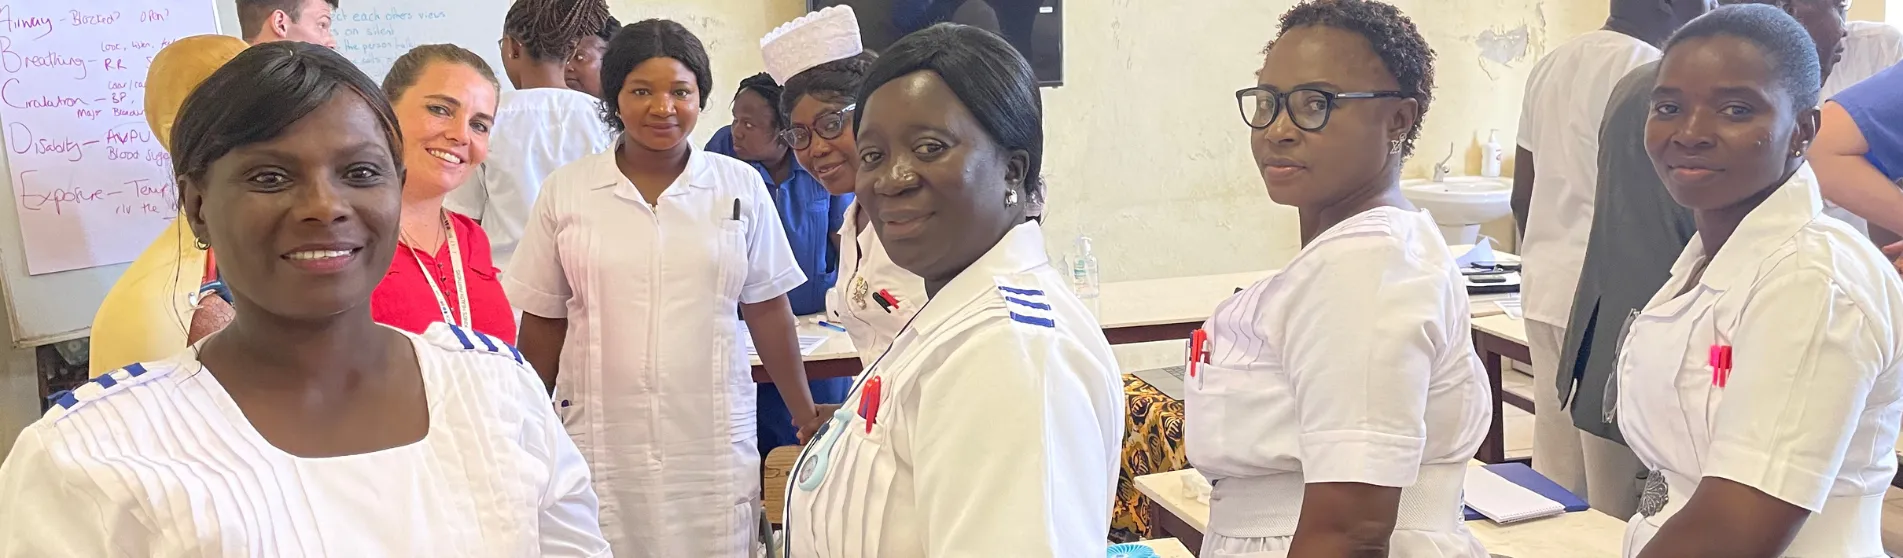 Nursing Education Sierra Leone_banner